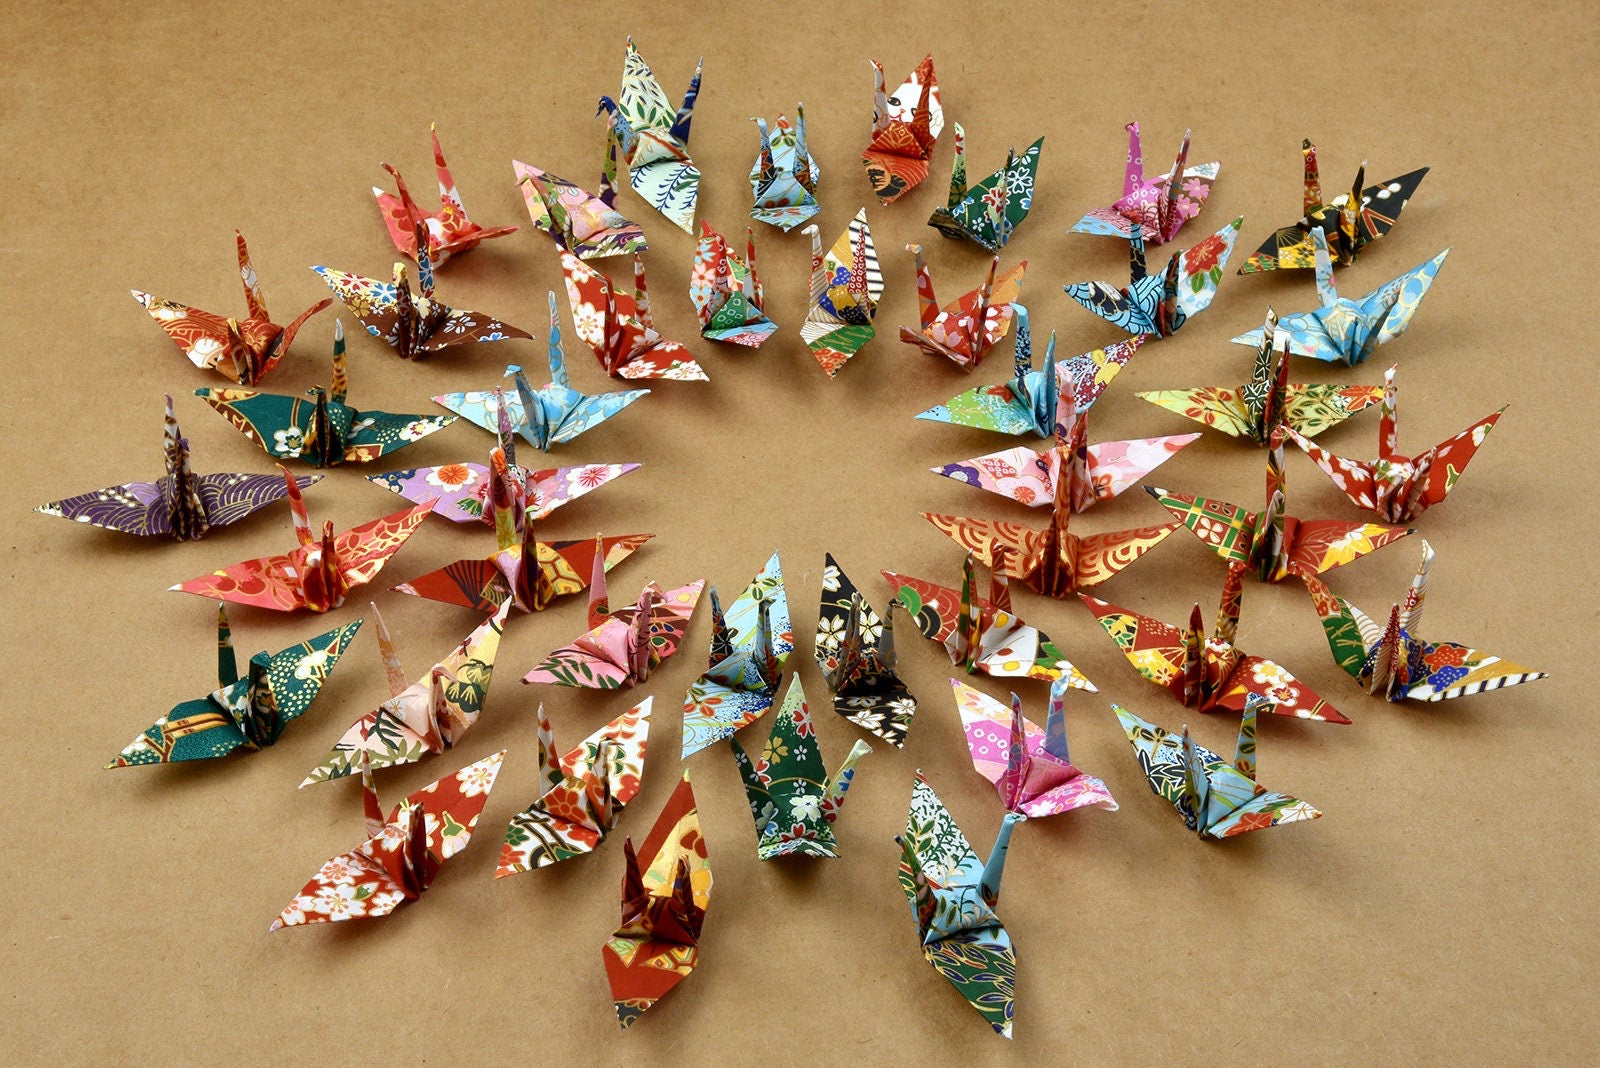 100 gru di carta origami carta Washi modelli misti gru origami realizzata con stampa giapponese 3x3 pollici carta chiyogami arte ornamento decorazione